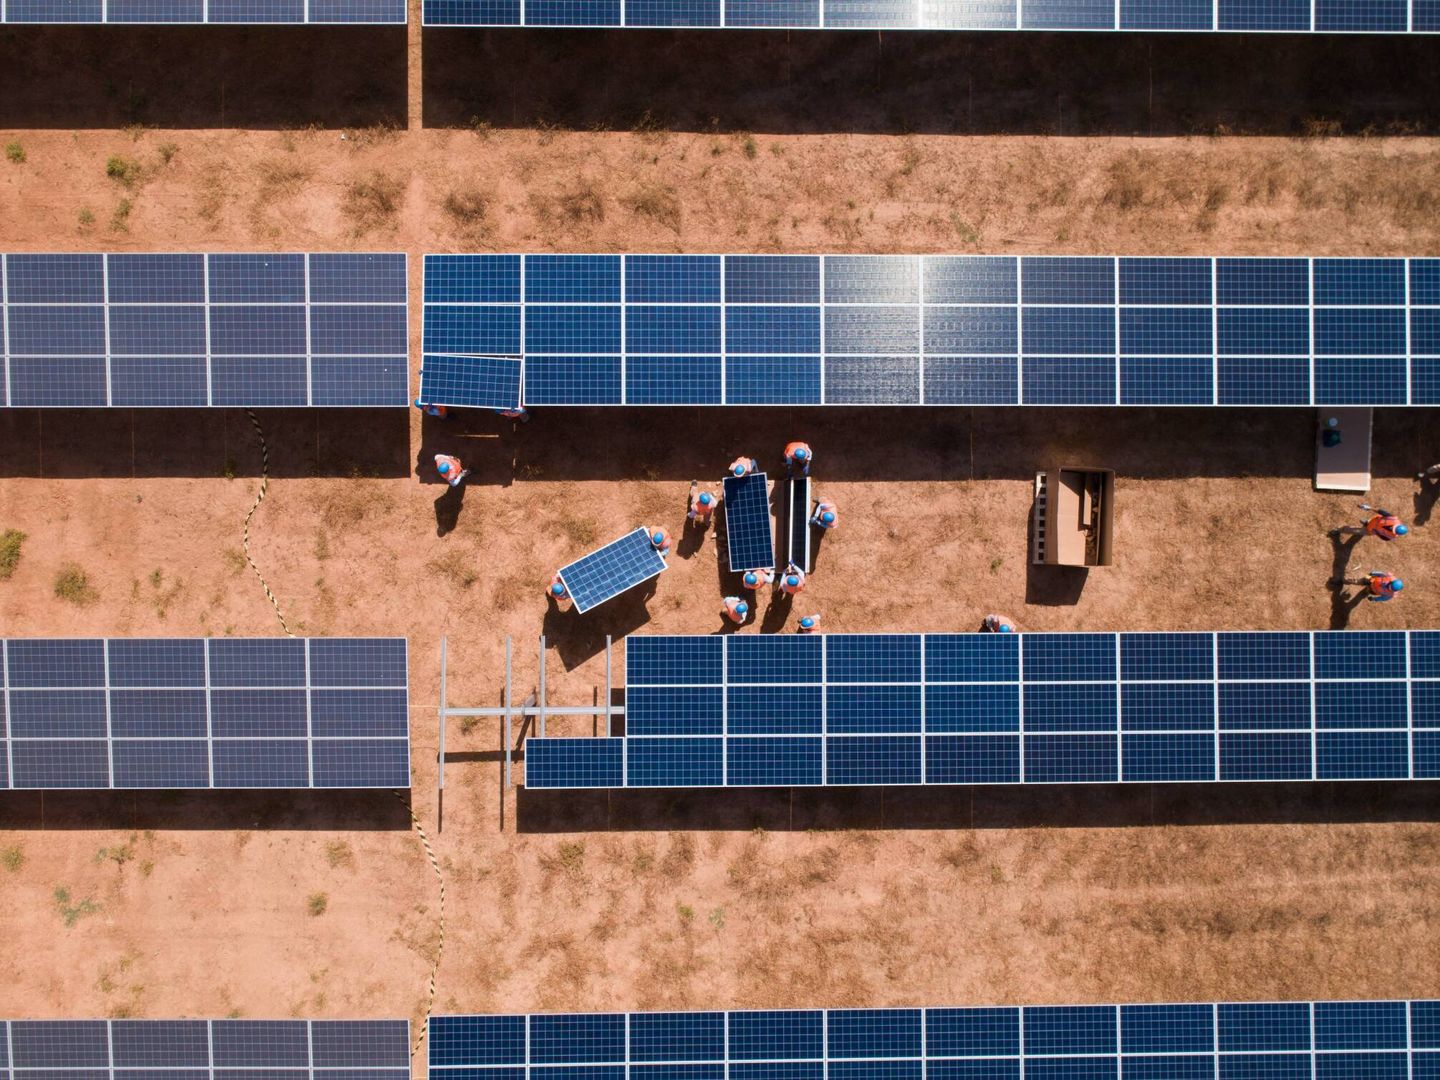 Construcción de un parque solar fotovoltaico. (Cedida)